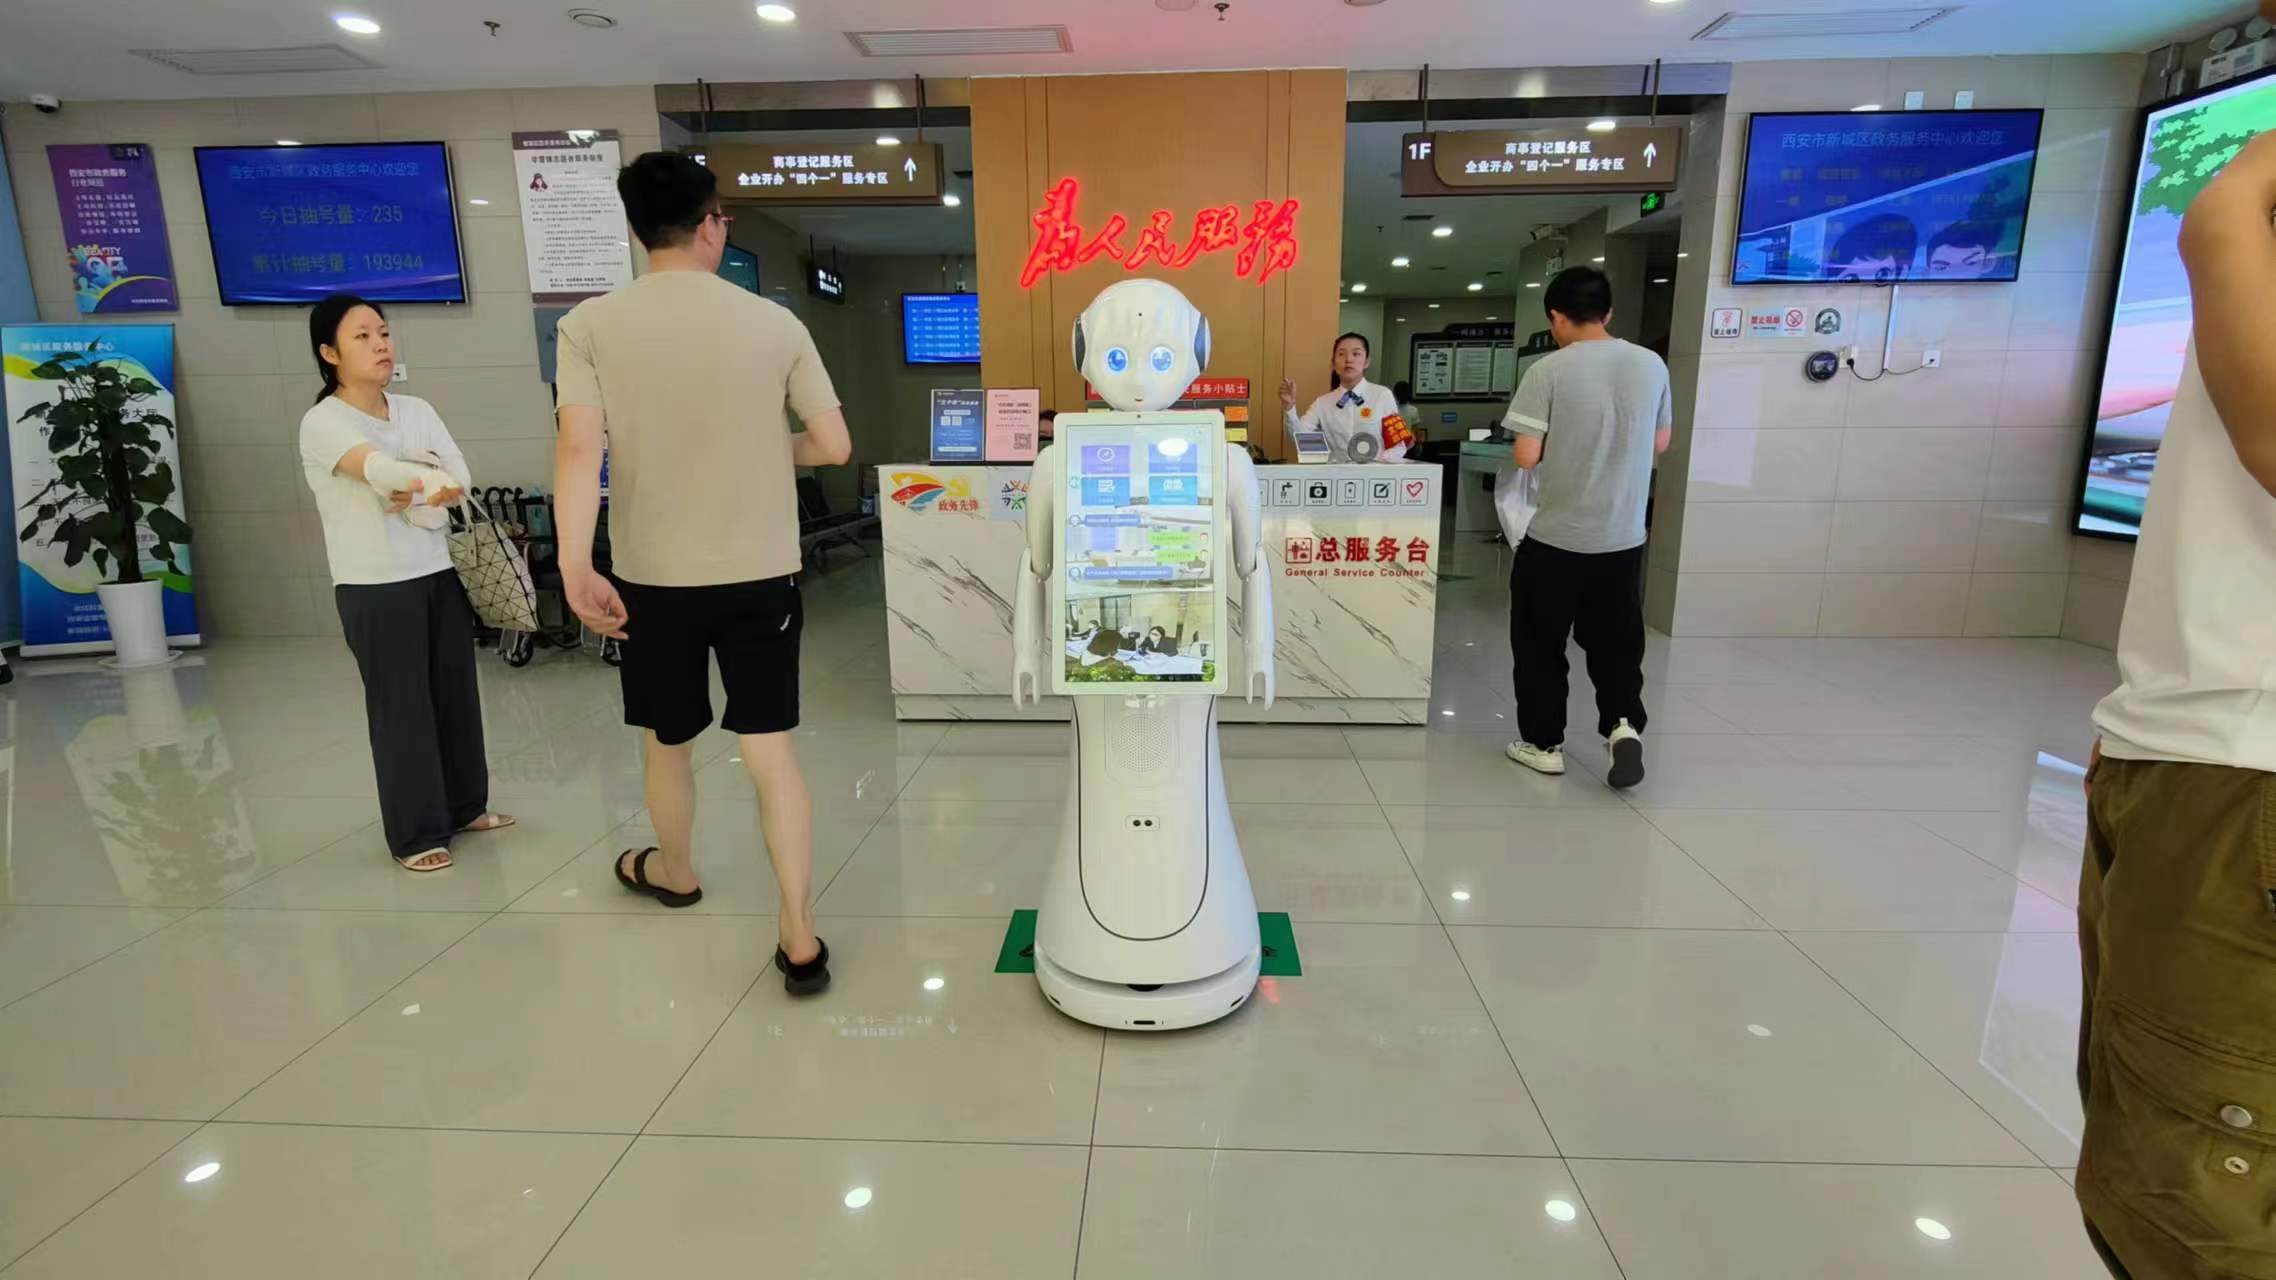 حالة تطبيق روبوت خدمة Alice-AI في "مركز الشؤون الحكومية لمنطقة شيان الجديدة"!